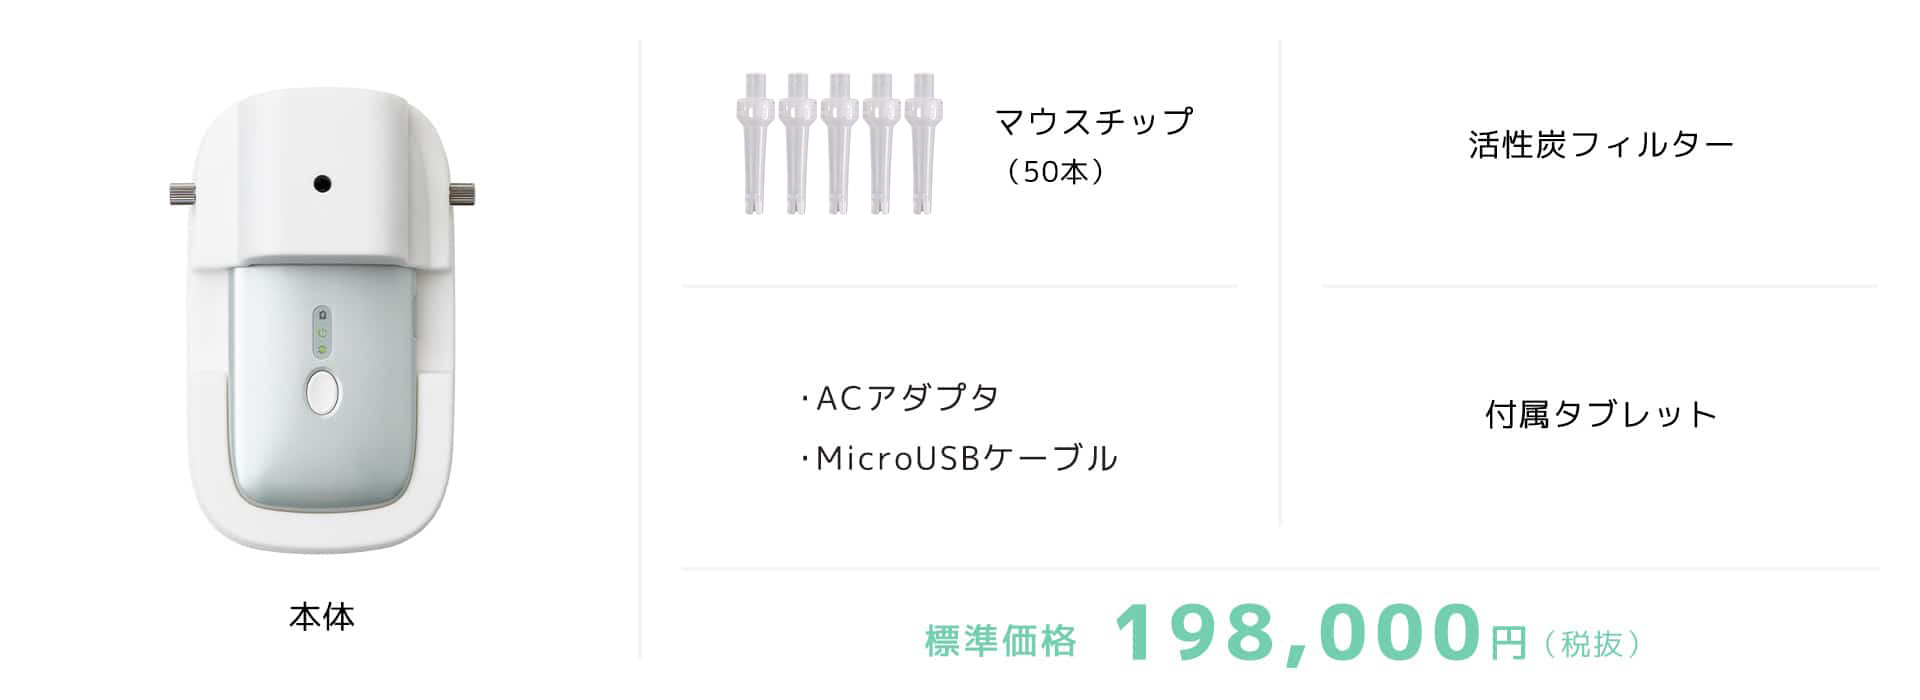 標準価格 198,000円(税抜)